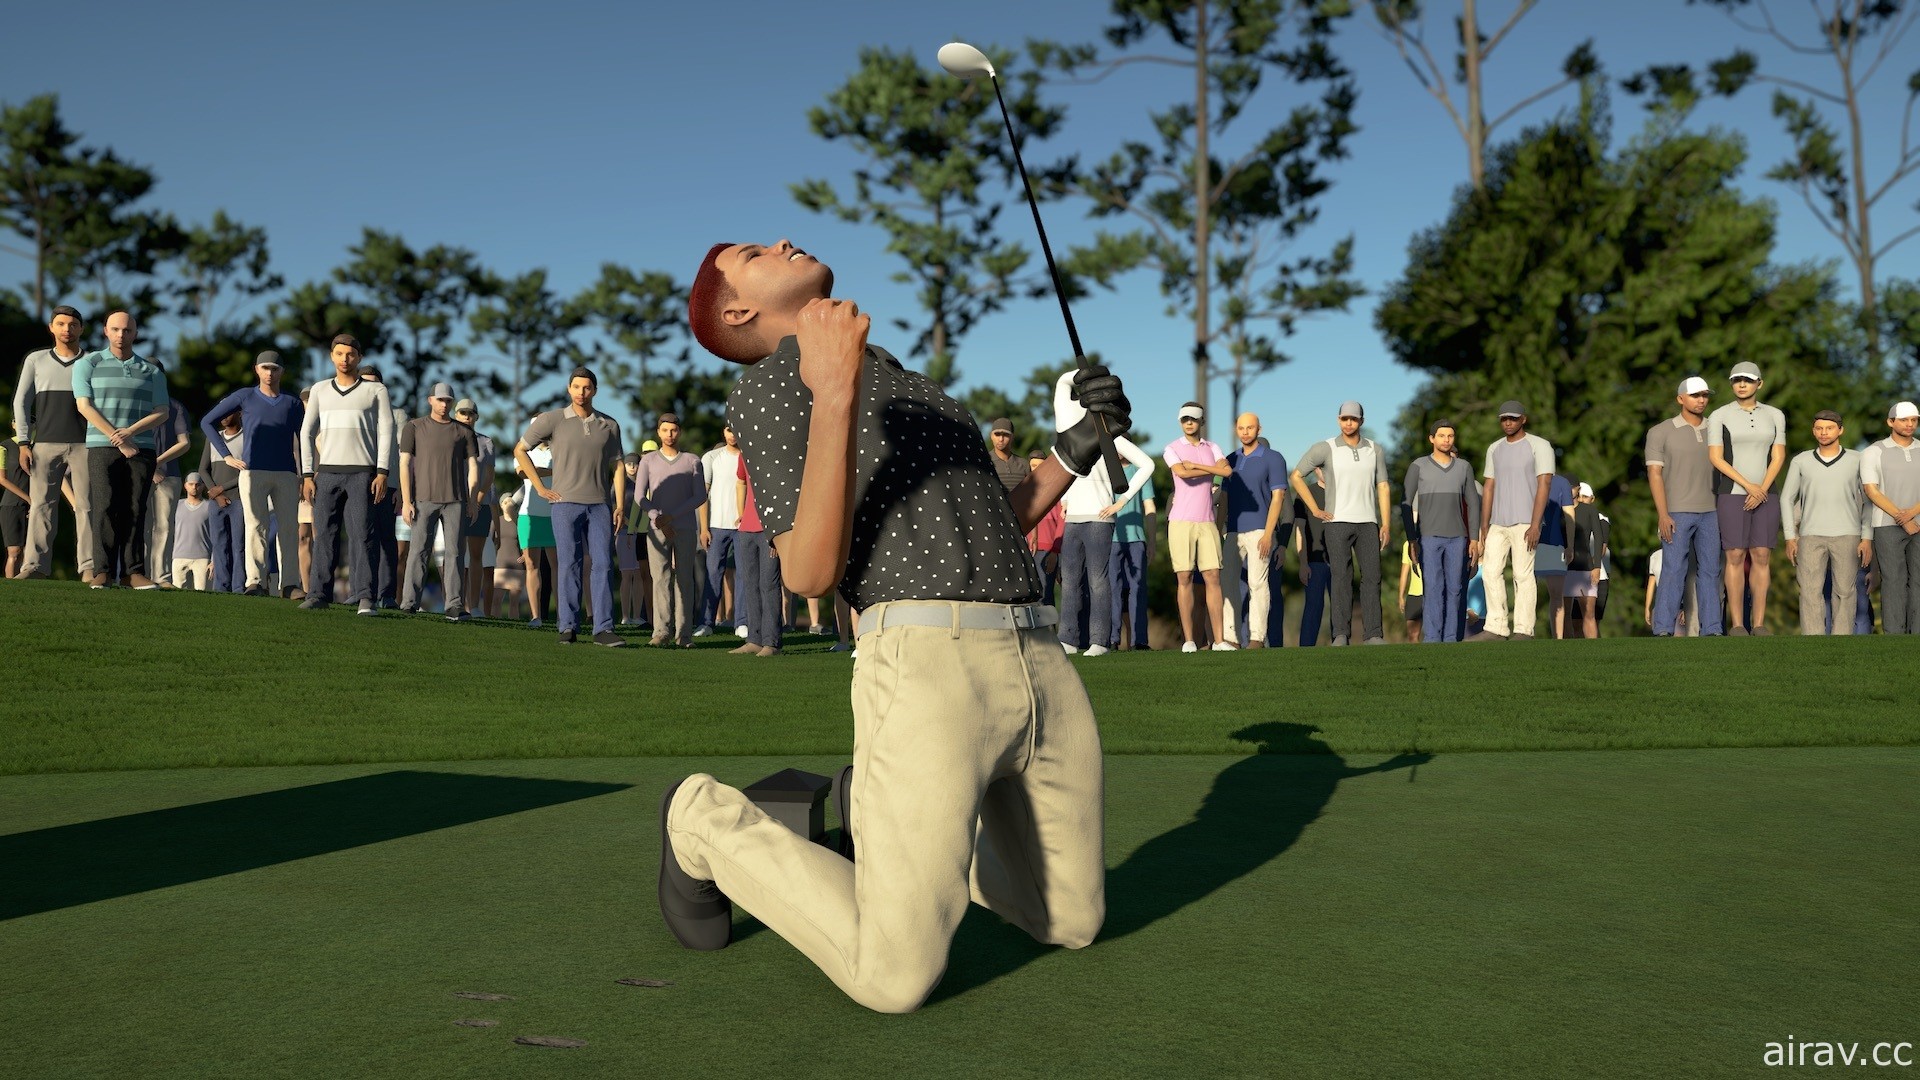 高爾夫硬是了得！《PGA 巡迴賽 2K21》在亞洲地區正式發售